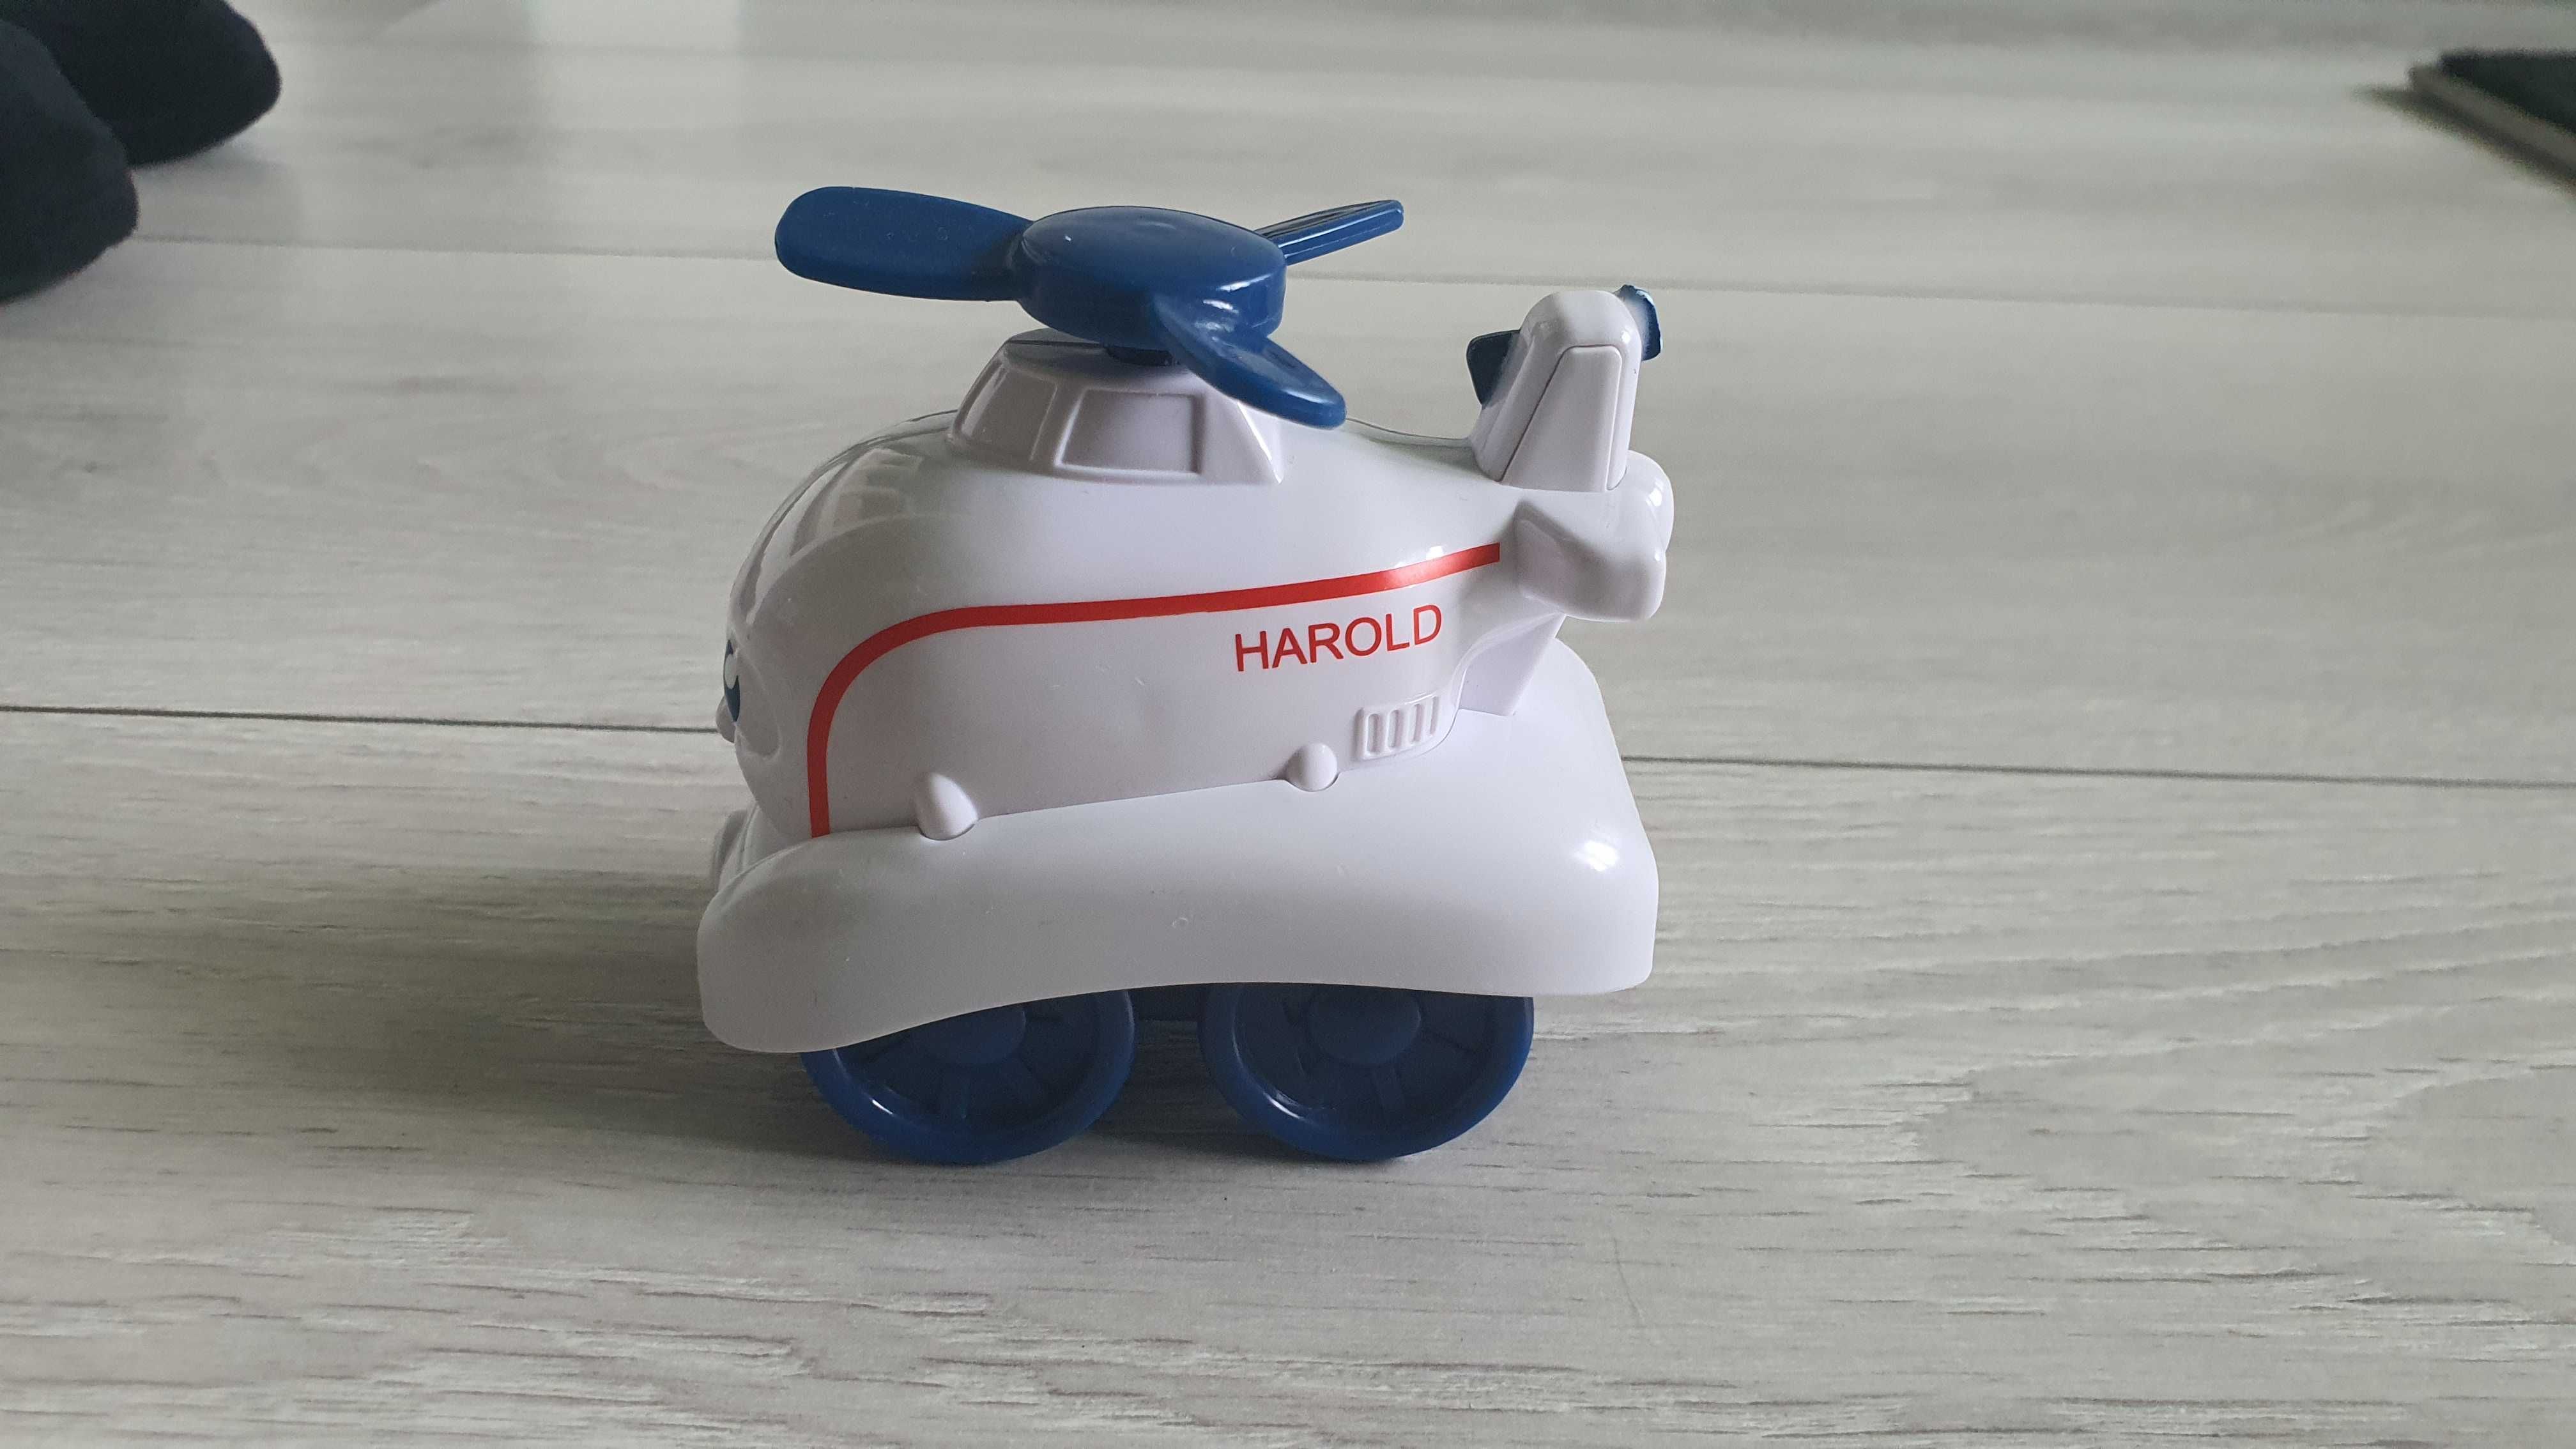 Helikopter Harold